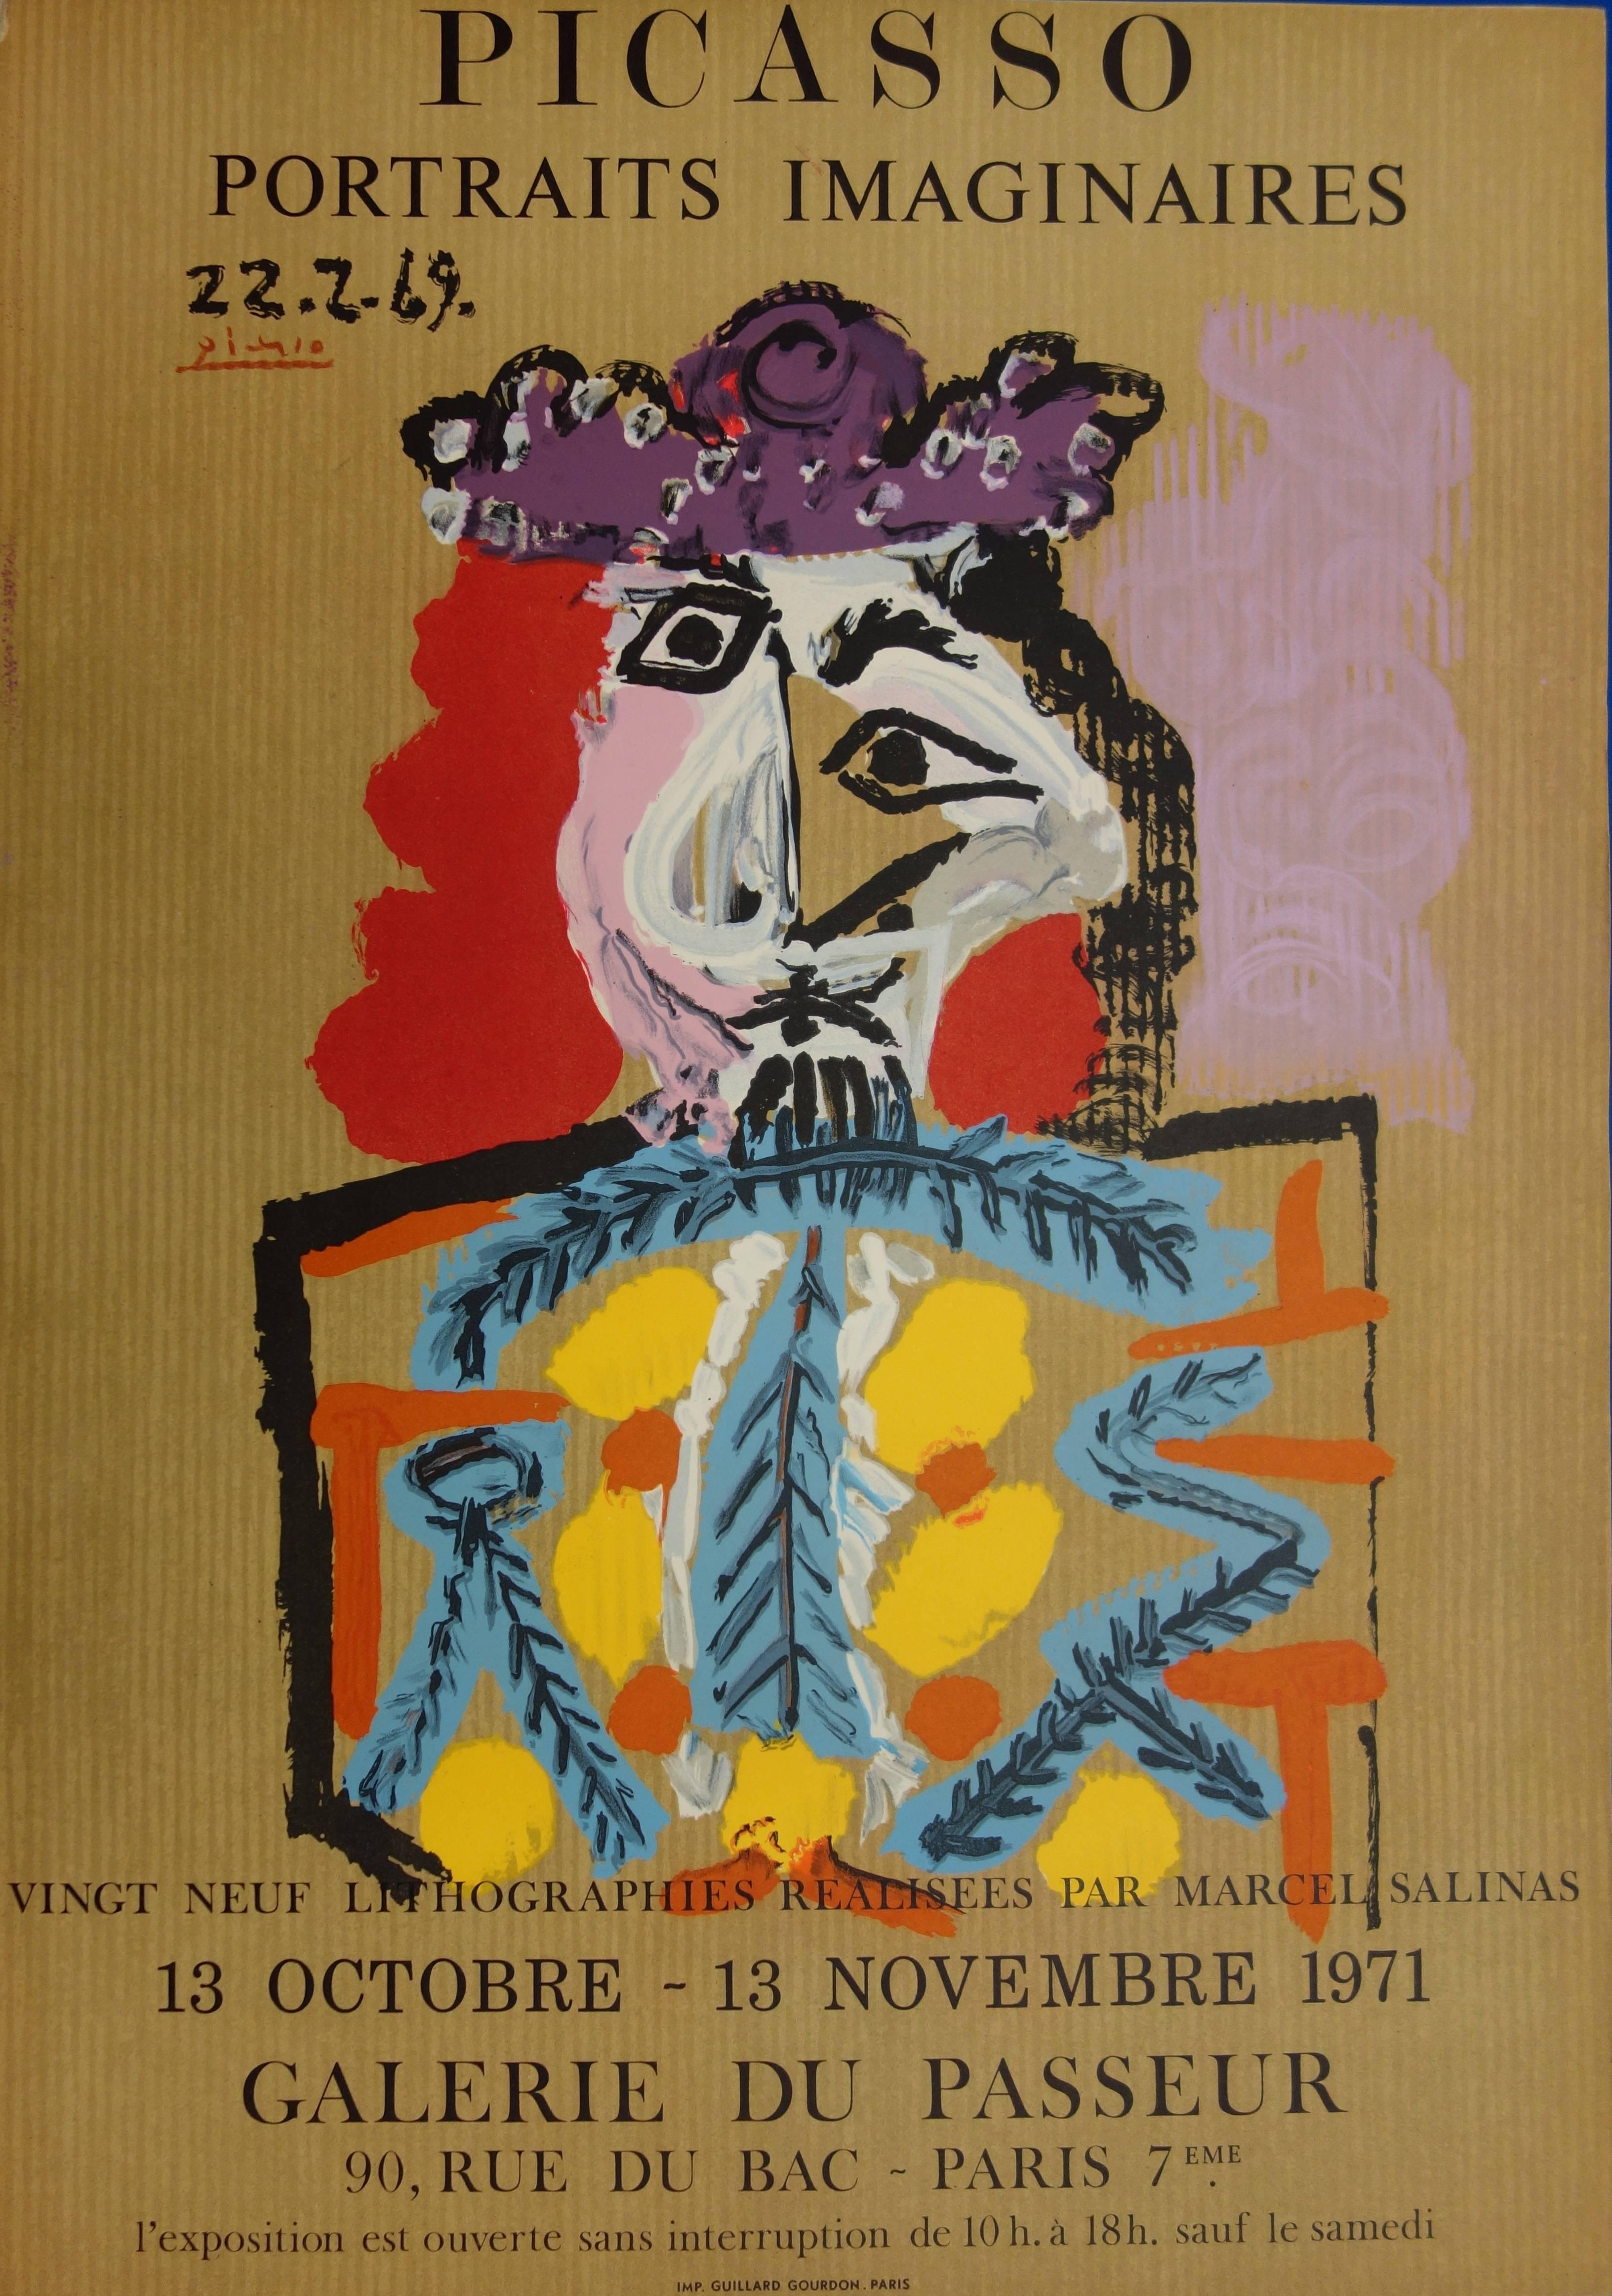 Portrait Print (after) Pablo Picasso - Portraits imaginaires : Torero - Lithographie - 1971